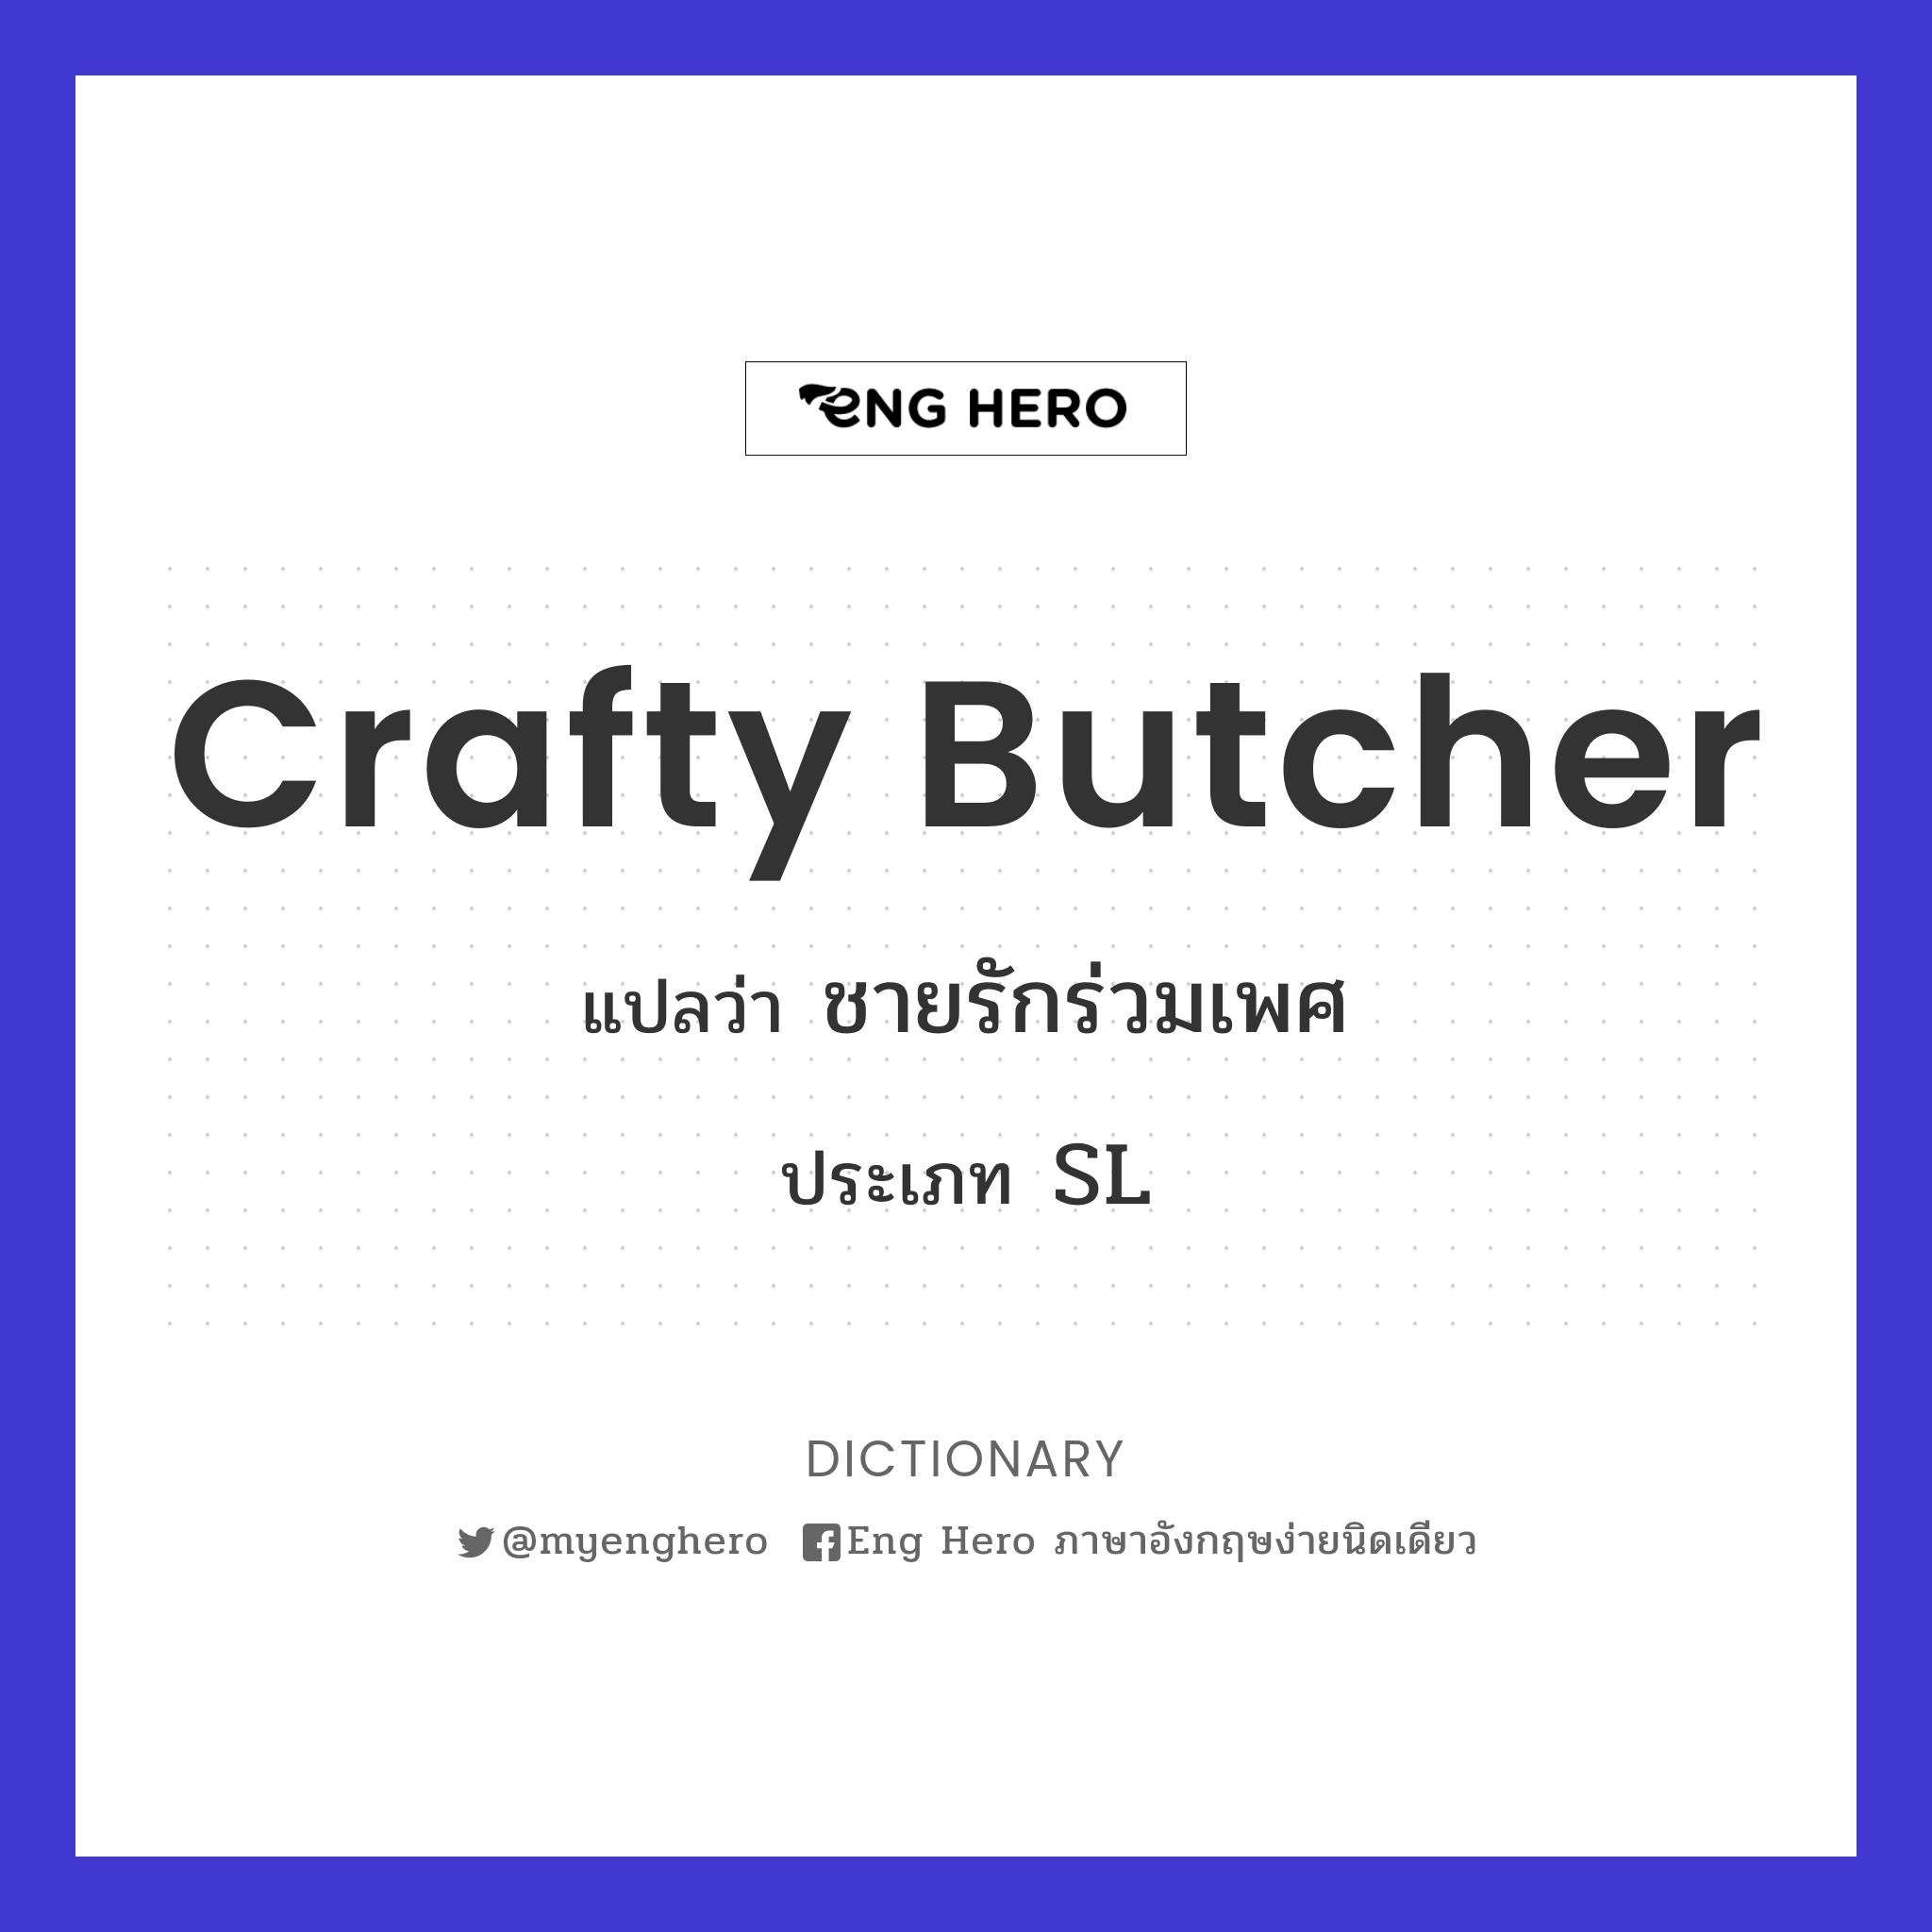 crafty butcher